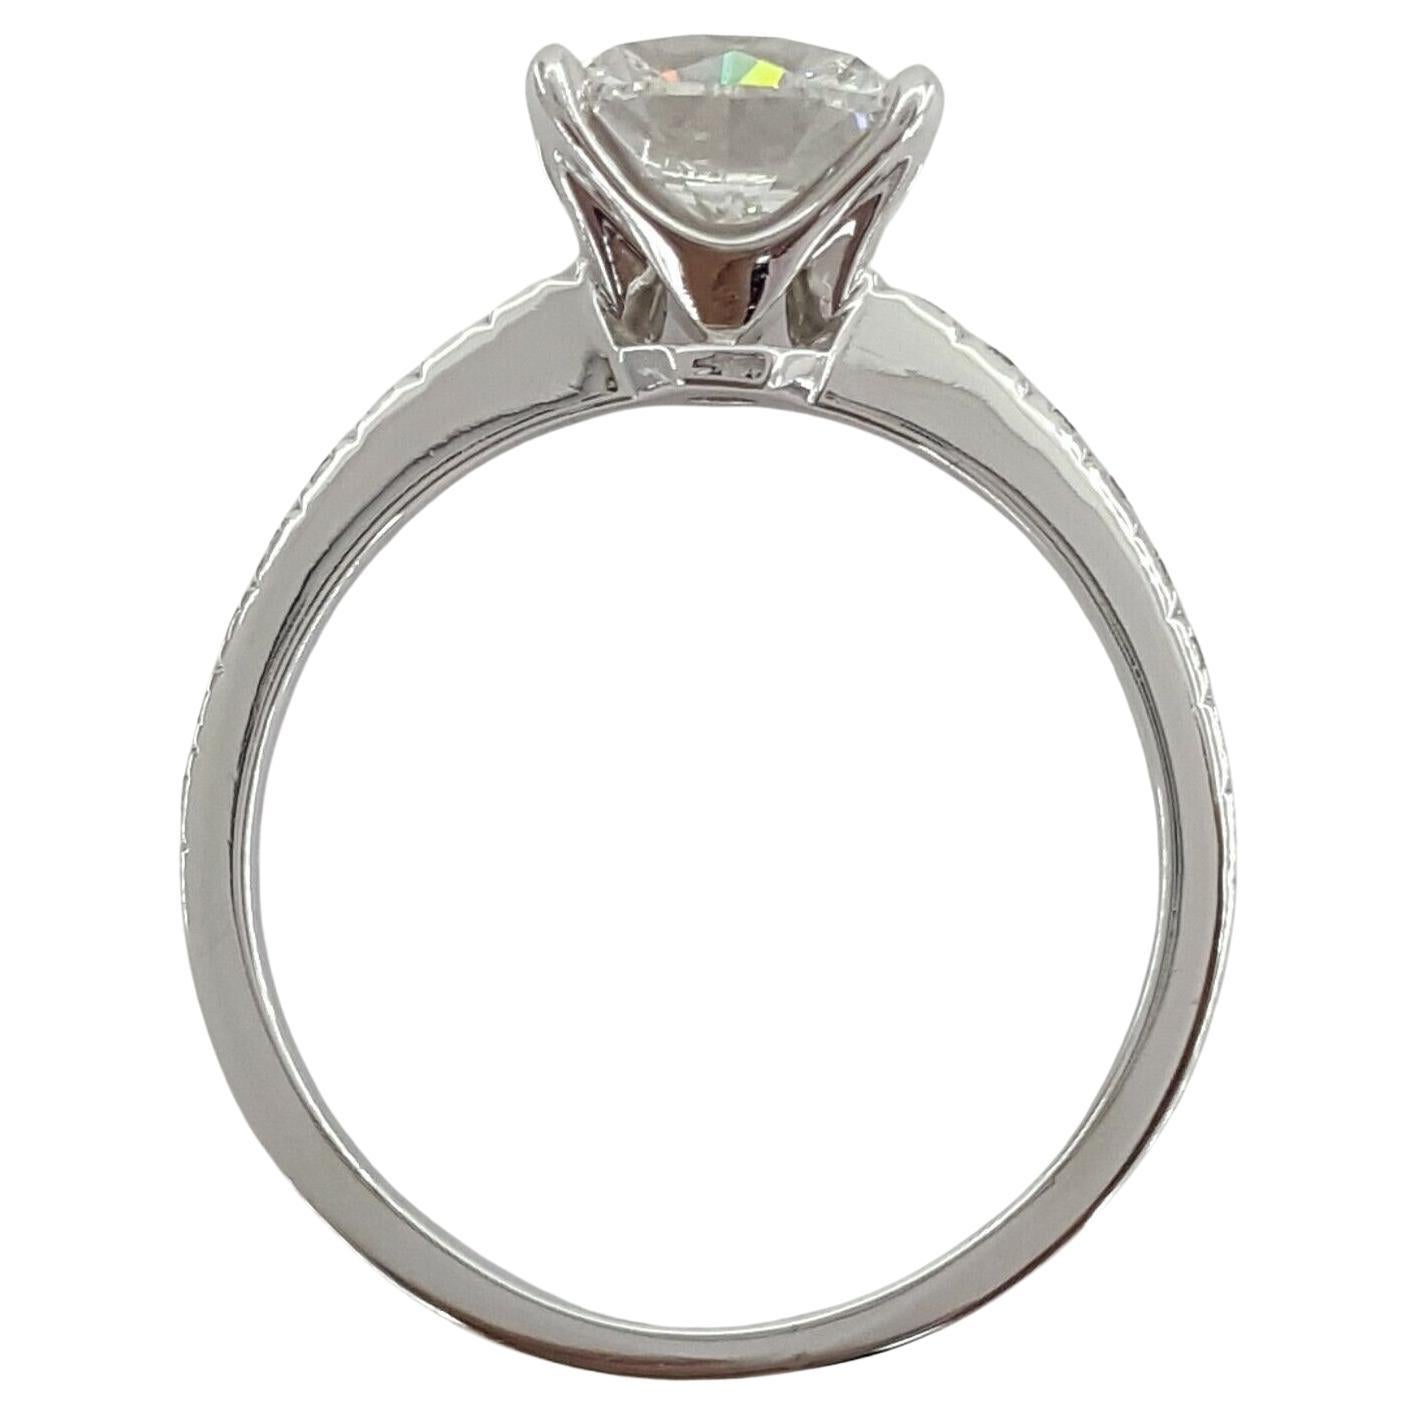  Tiffany & Co. NOVO Bague de fiançailles en platine de 2,17 carats de poids total, avec diamant taillé en coussin et brillant. 

La bague pèse 4,5 grammes et est de taille 6,75. 
